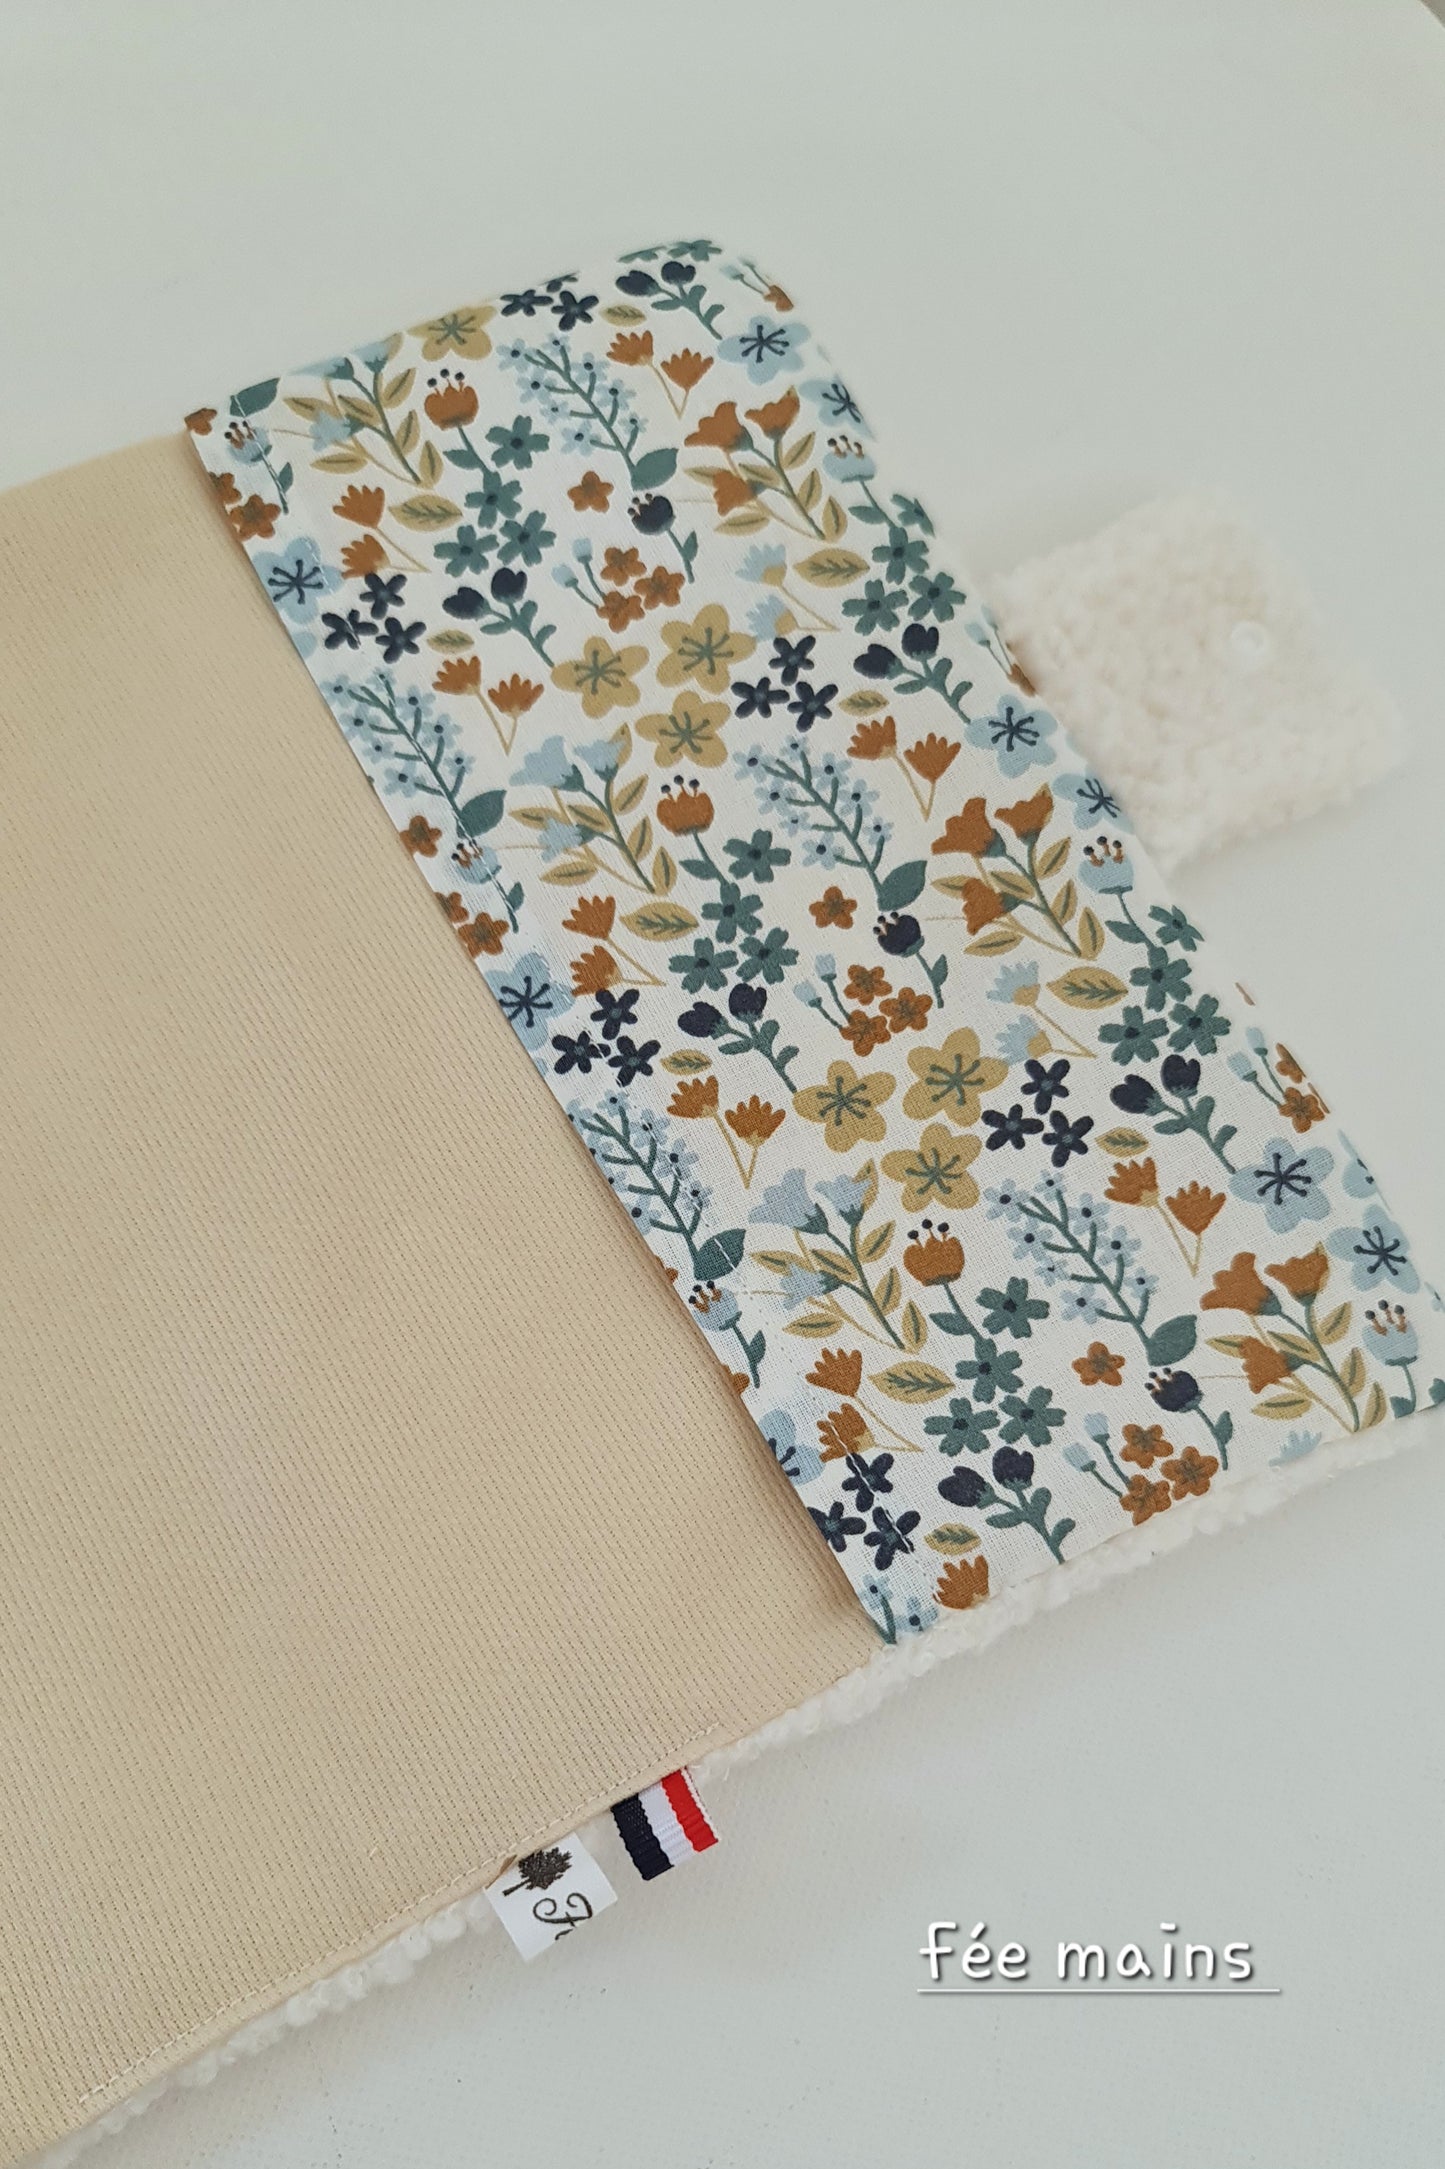 Protège carnet de santé bébé moumoute brodé: un accessoire pratique et esthétique avec une chouette